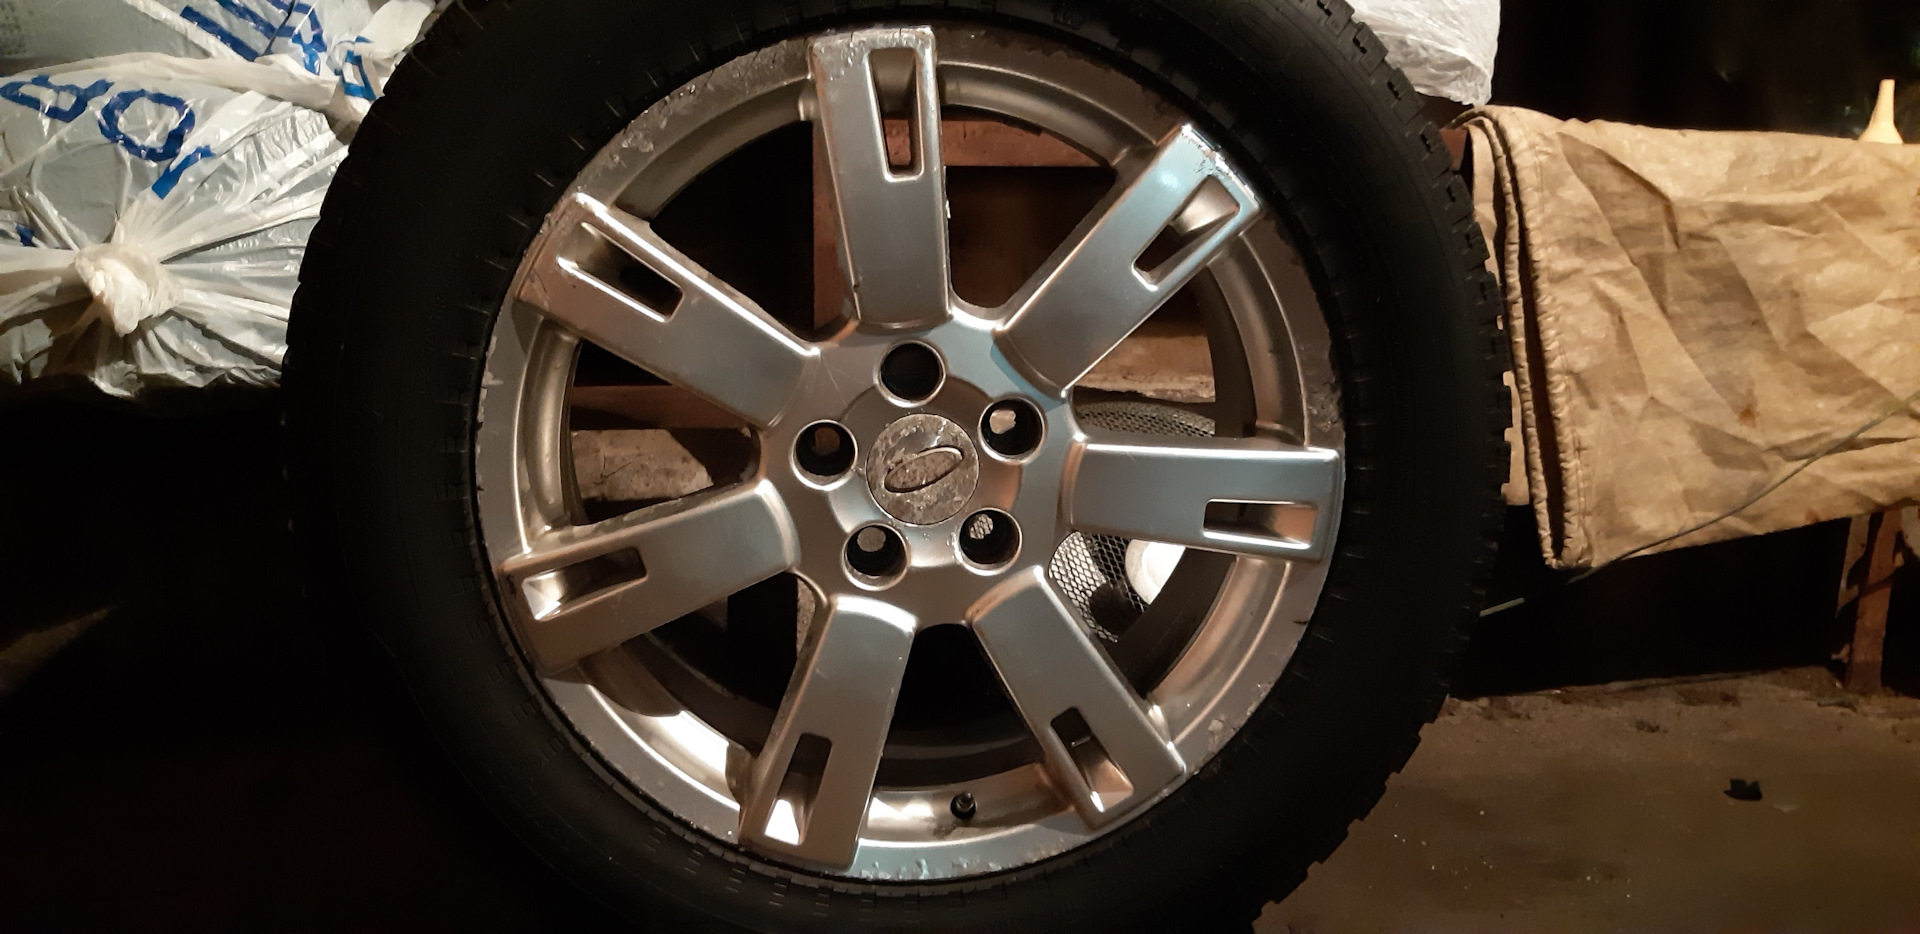 Комплект грязевые колёса на ленд Ровер Дискавери. Крепеж колес ленд Ровер 2014 года. Отрыв колеса ленд Ровер Норильск.